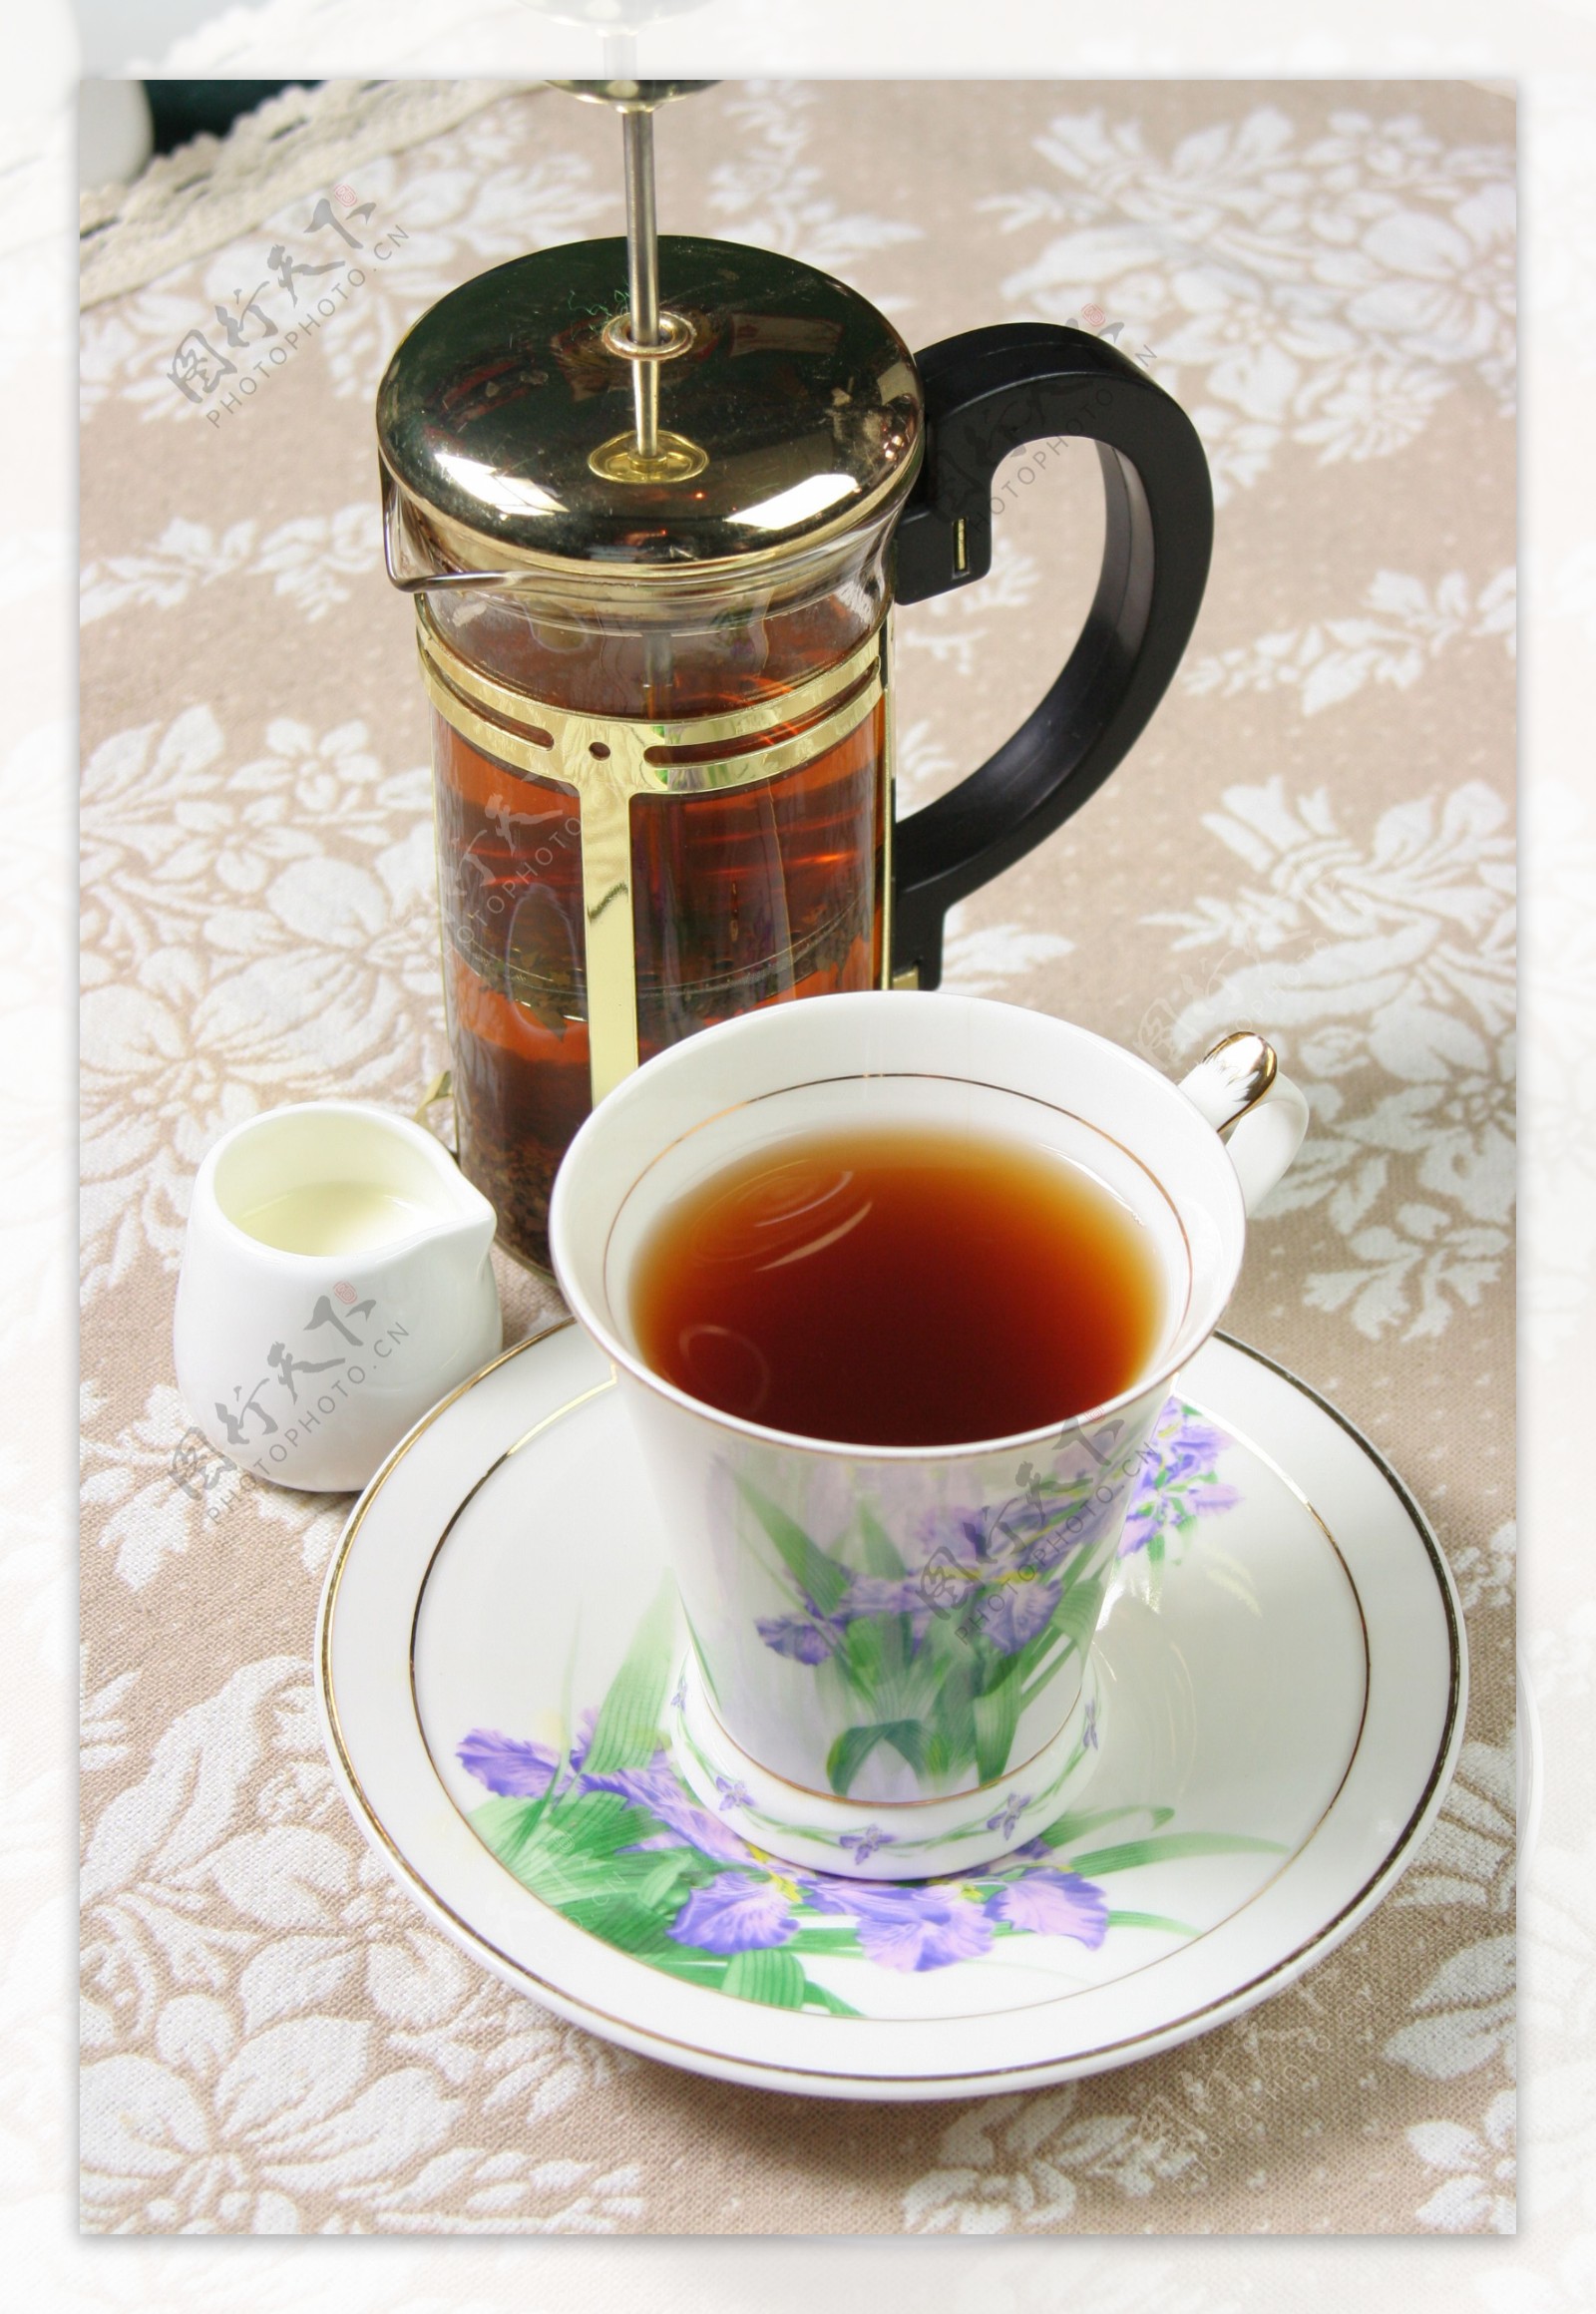 大吉岭红茶